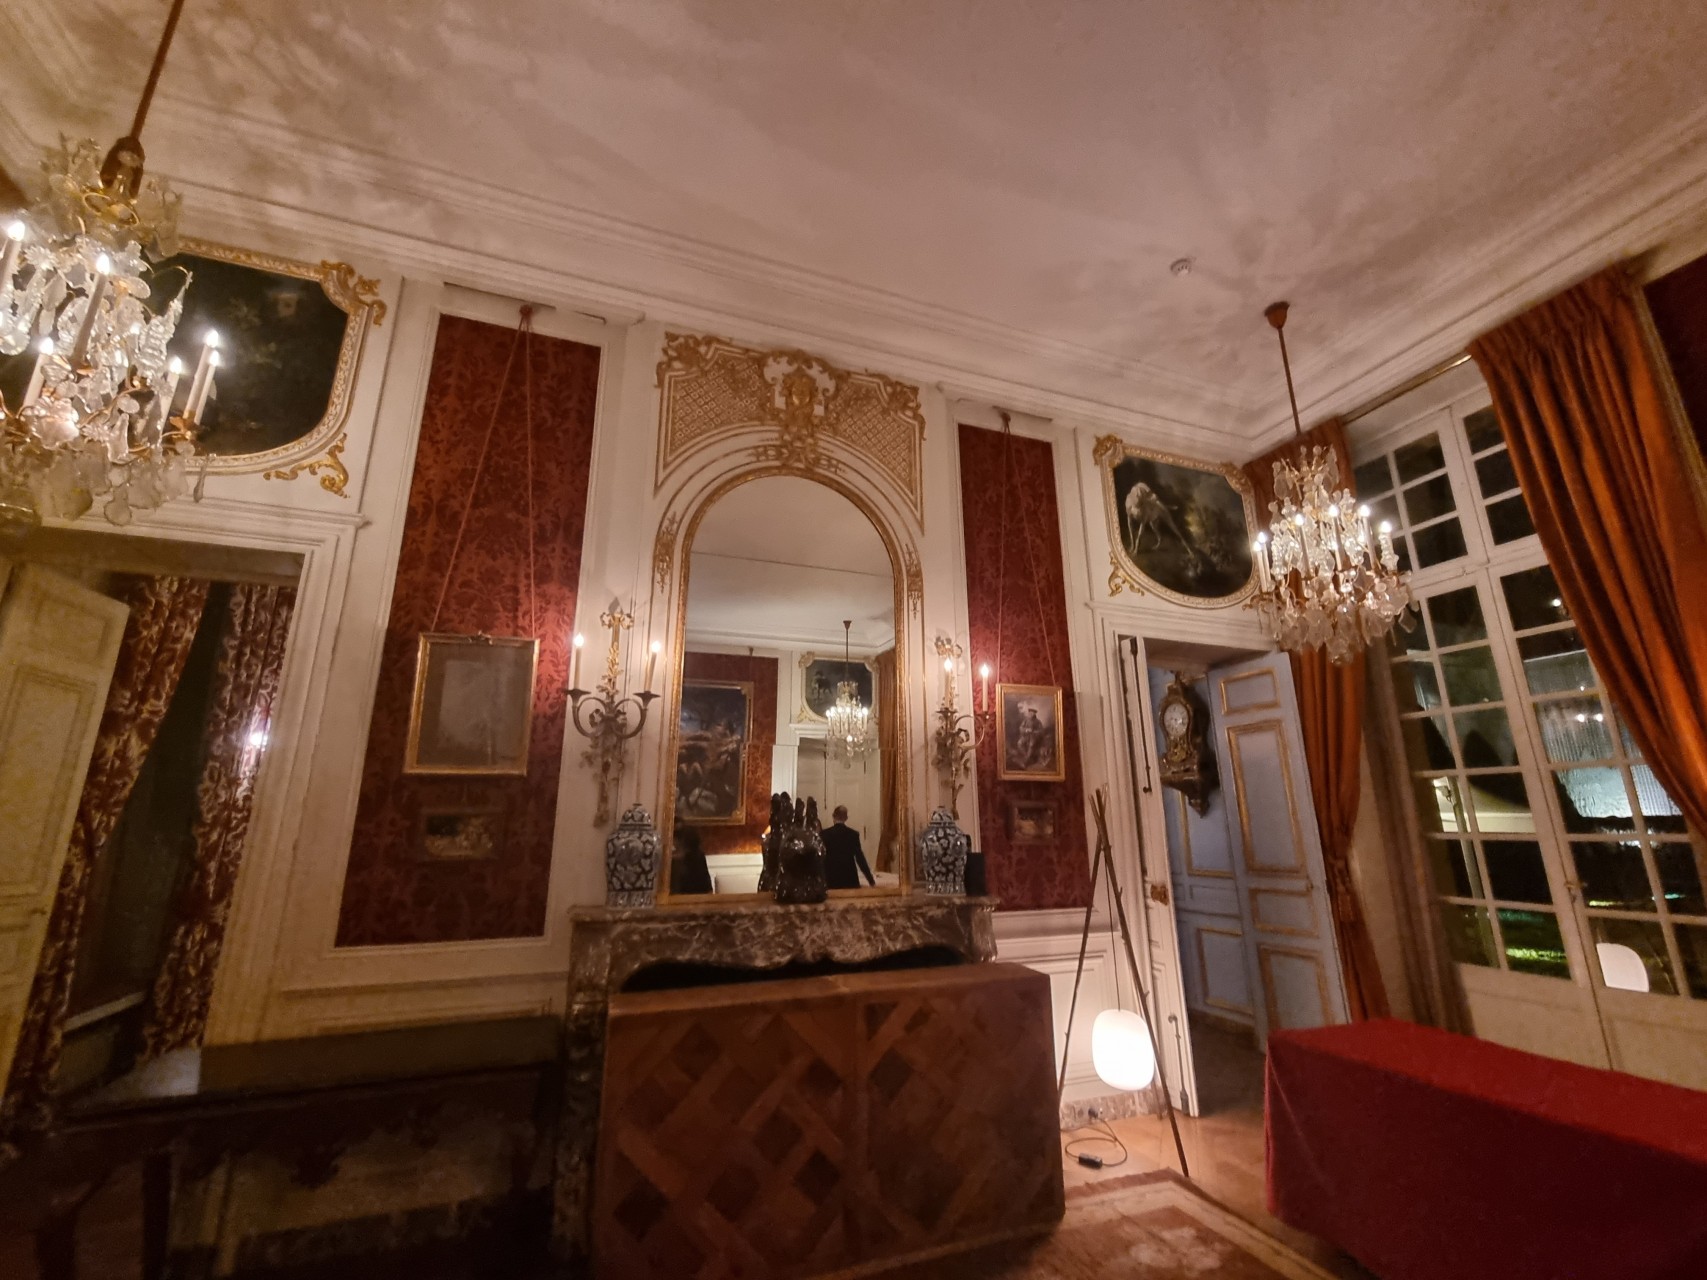 Salle décorée style XVIIIème siècle à l'Hotel de Guénégaud à Paris